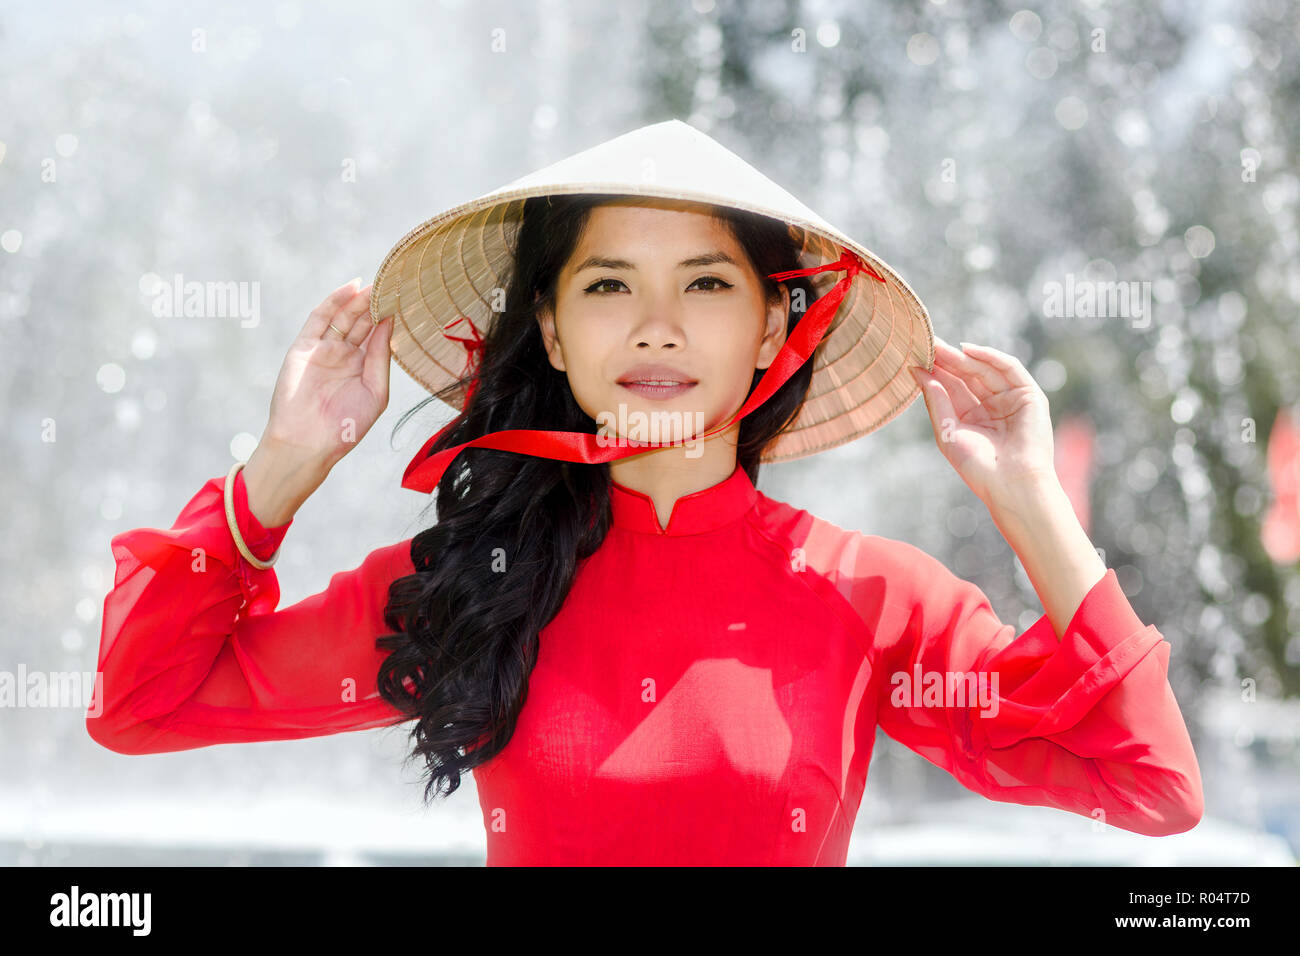 Vietnamienne dans un costume rouge et chapeau conique debout devant une  fontaine Photo Stock - Alamy